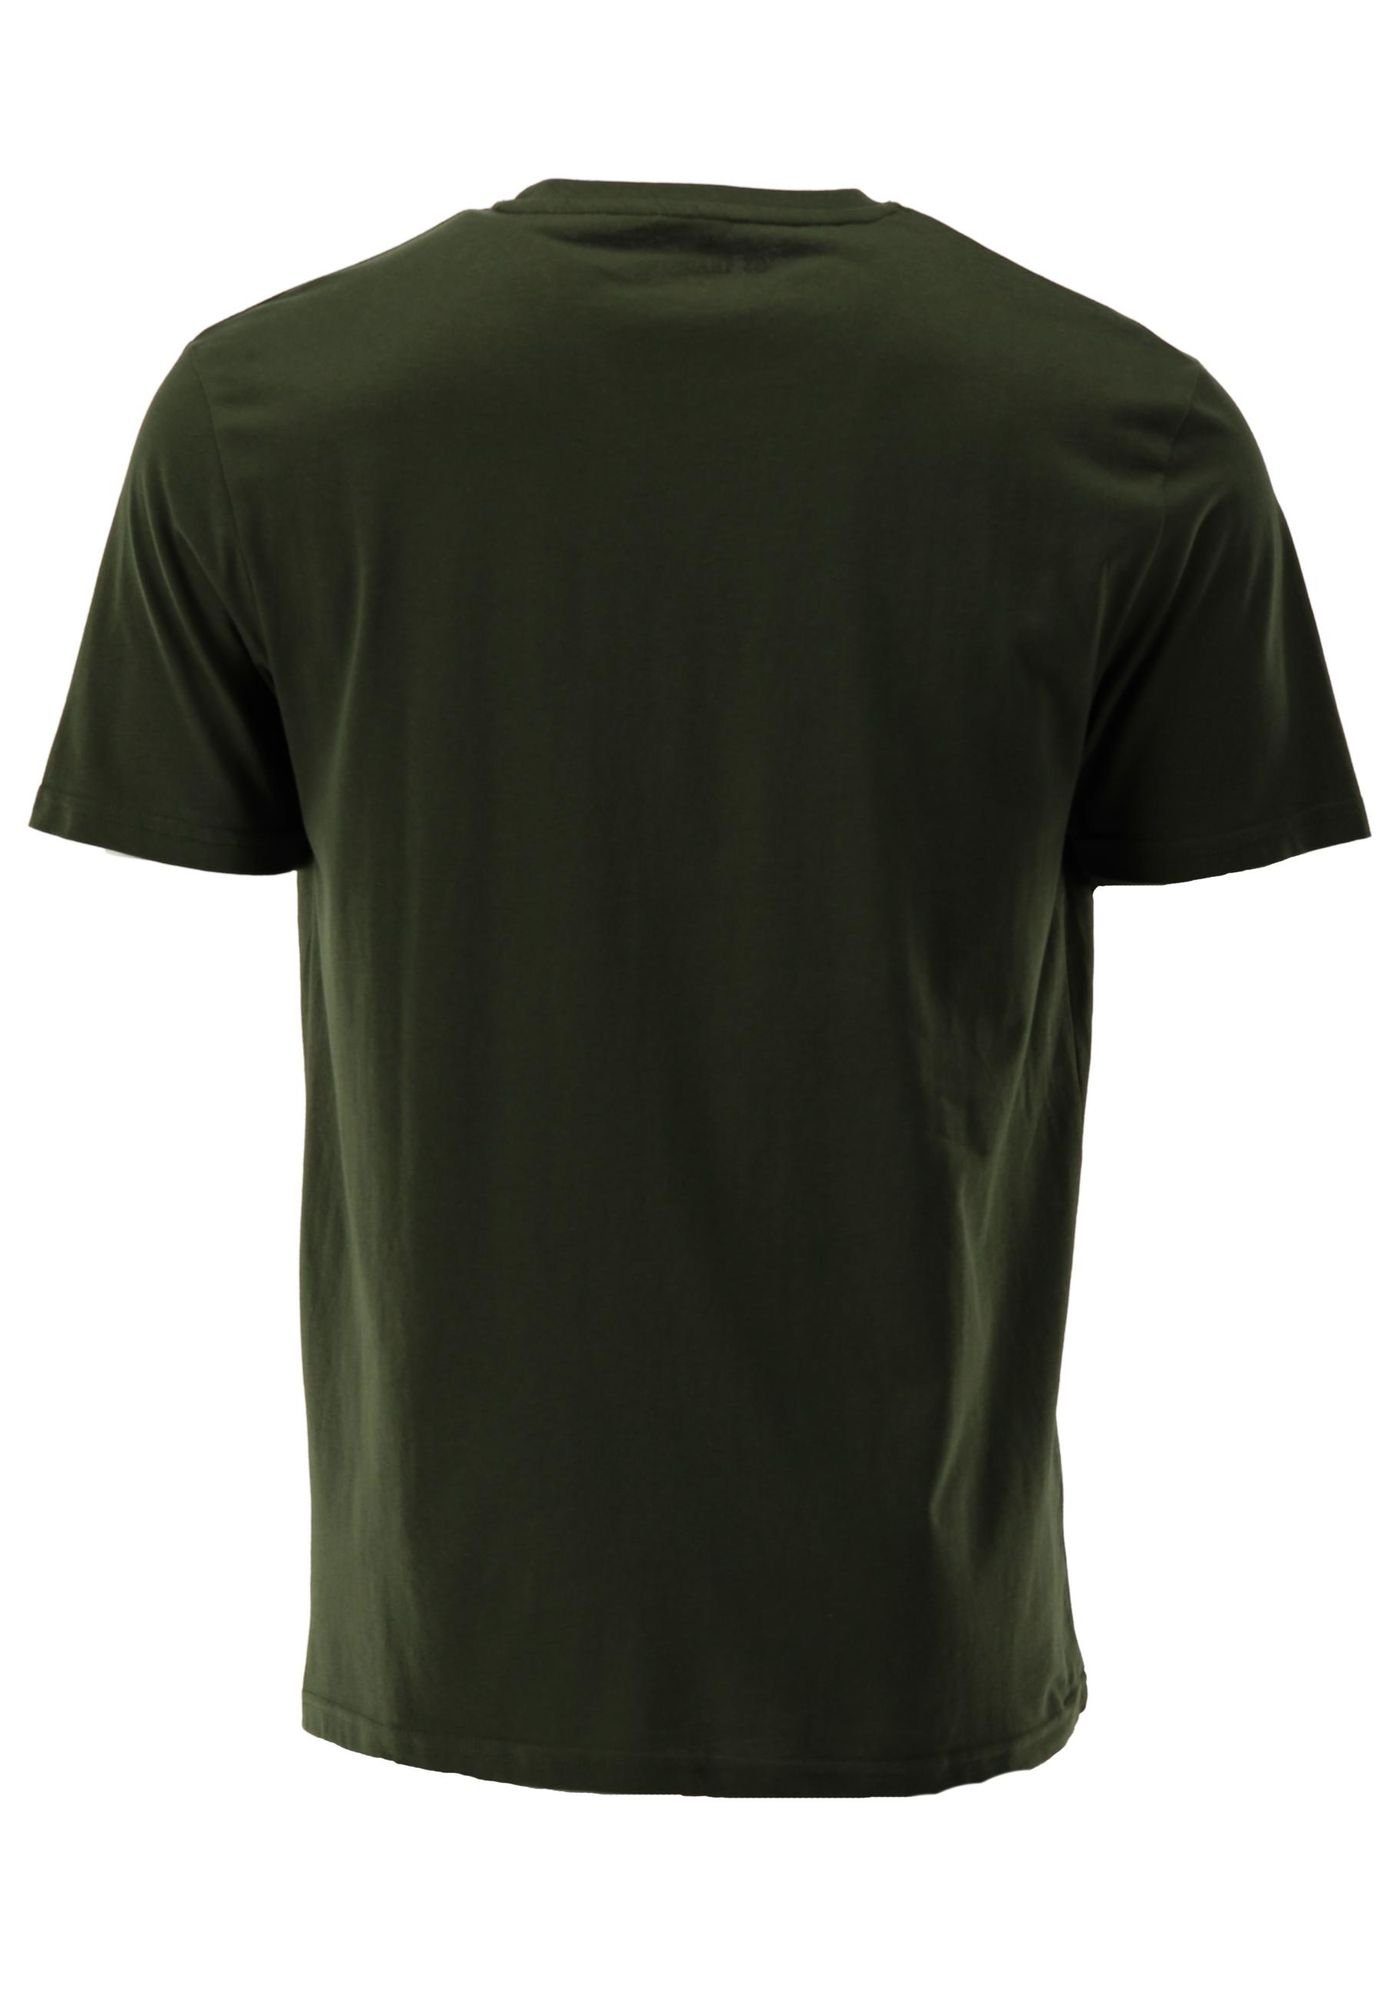 T-Shirt Rundhals Shirt OS-Trachten im 2er-Pack mit Bezuva